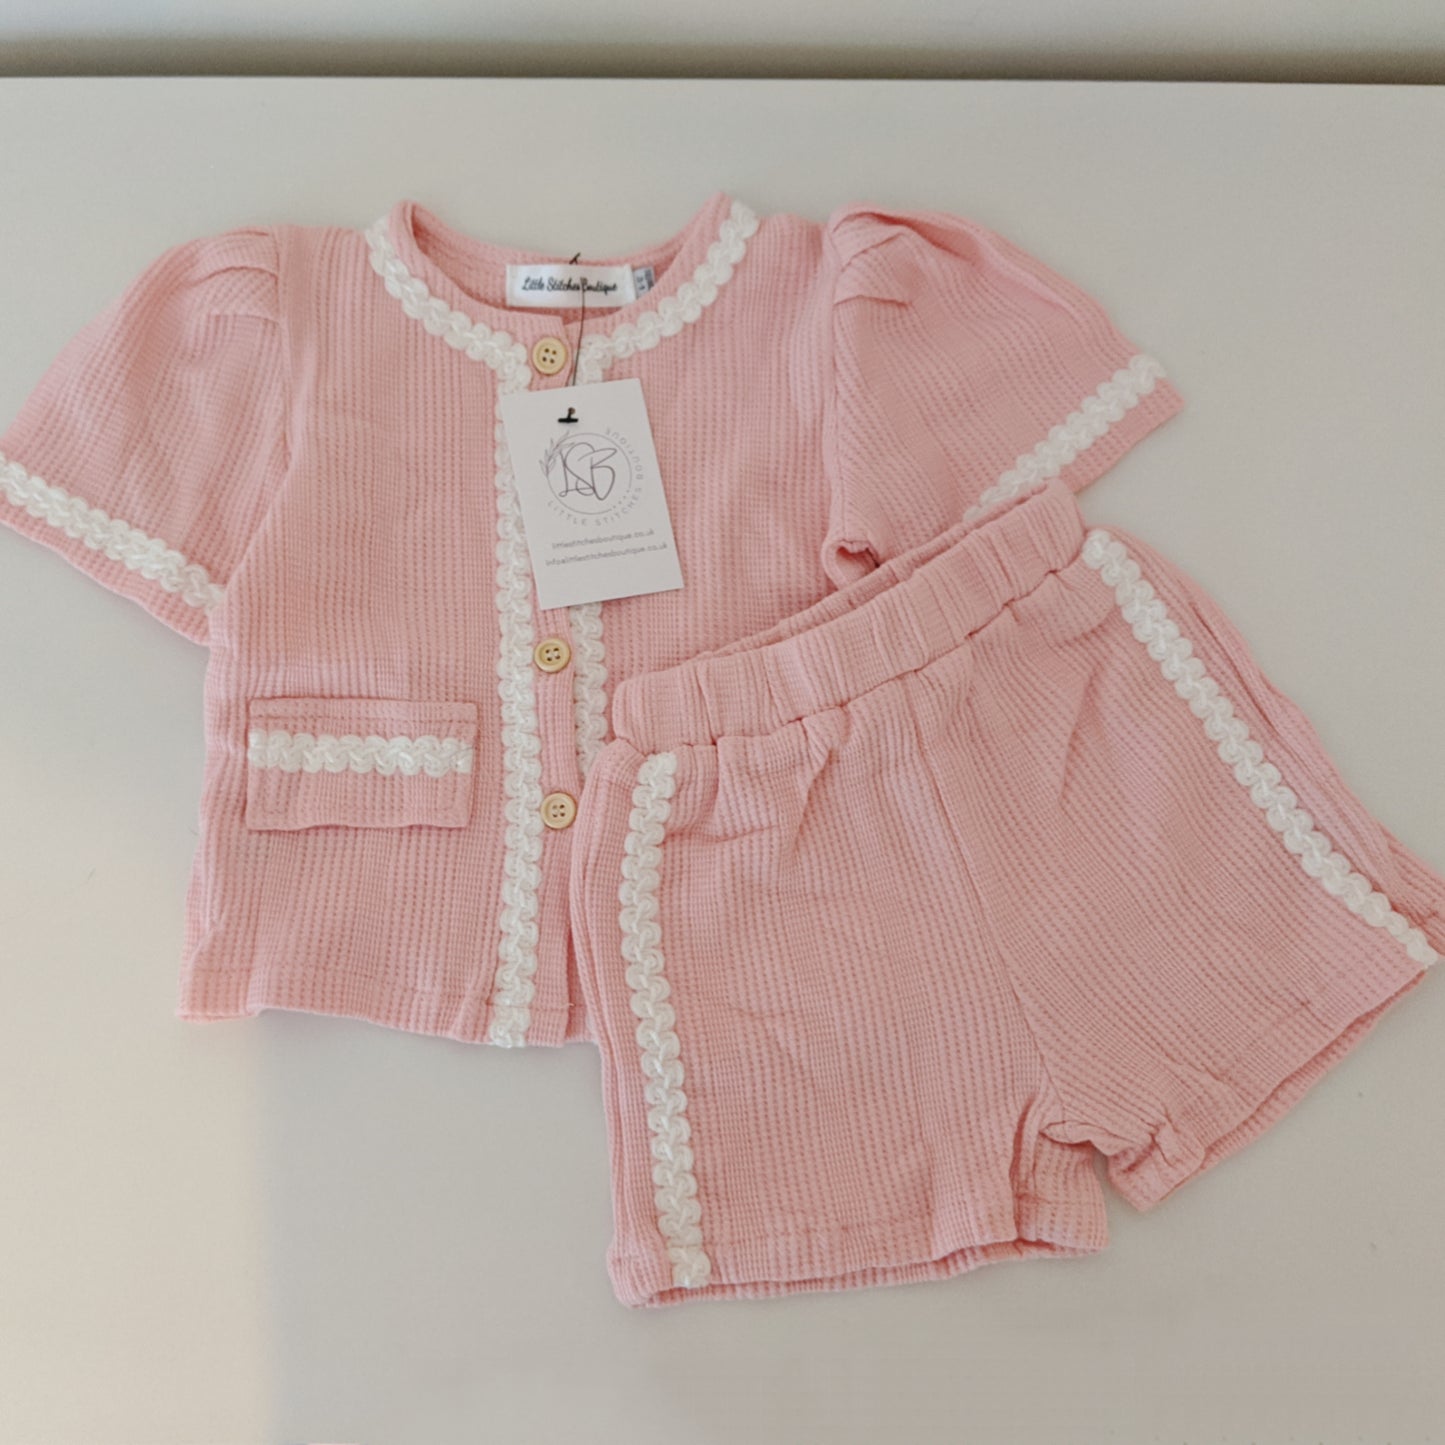 Baby Girls Pink 2 Piece Shorts Set